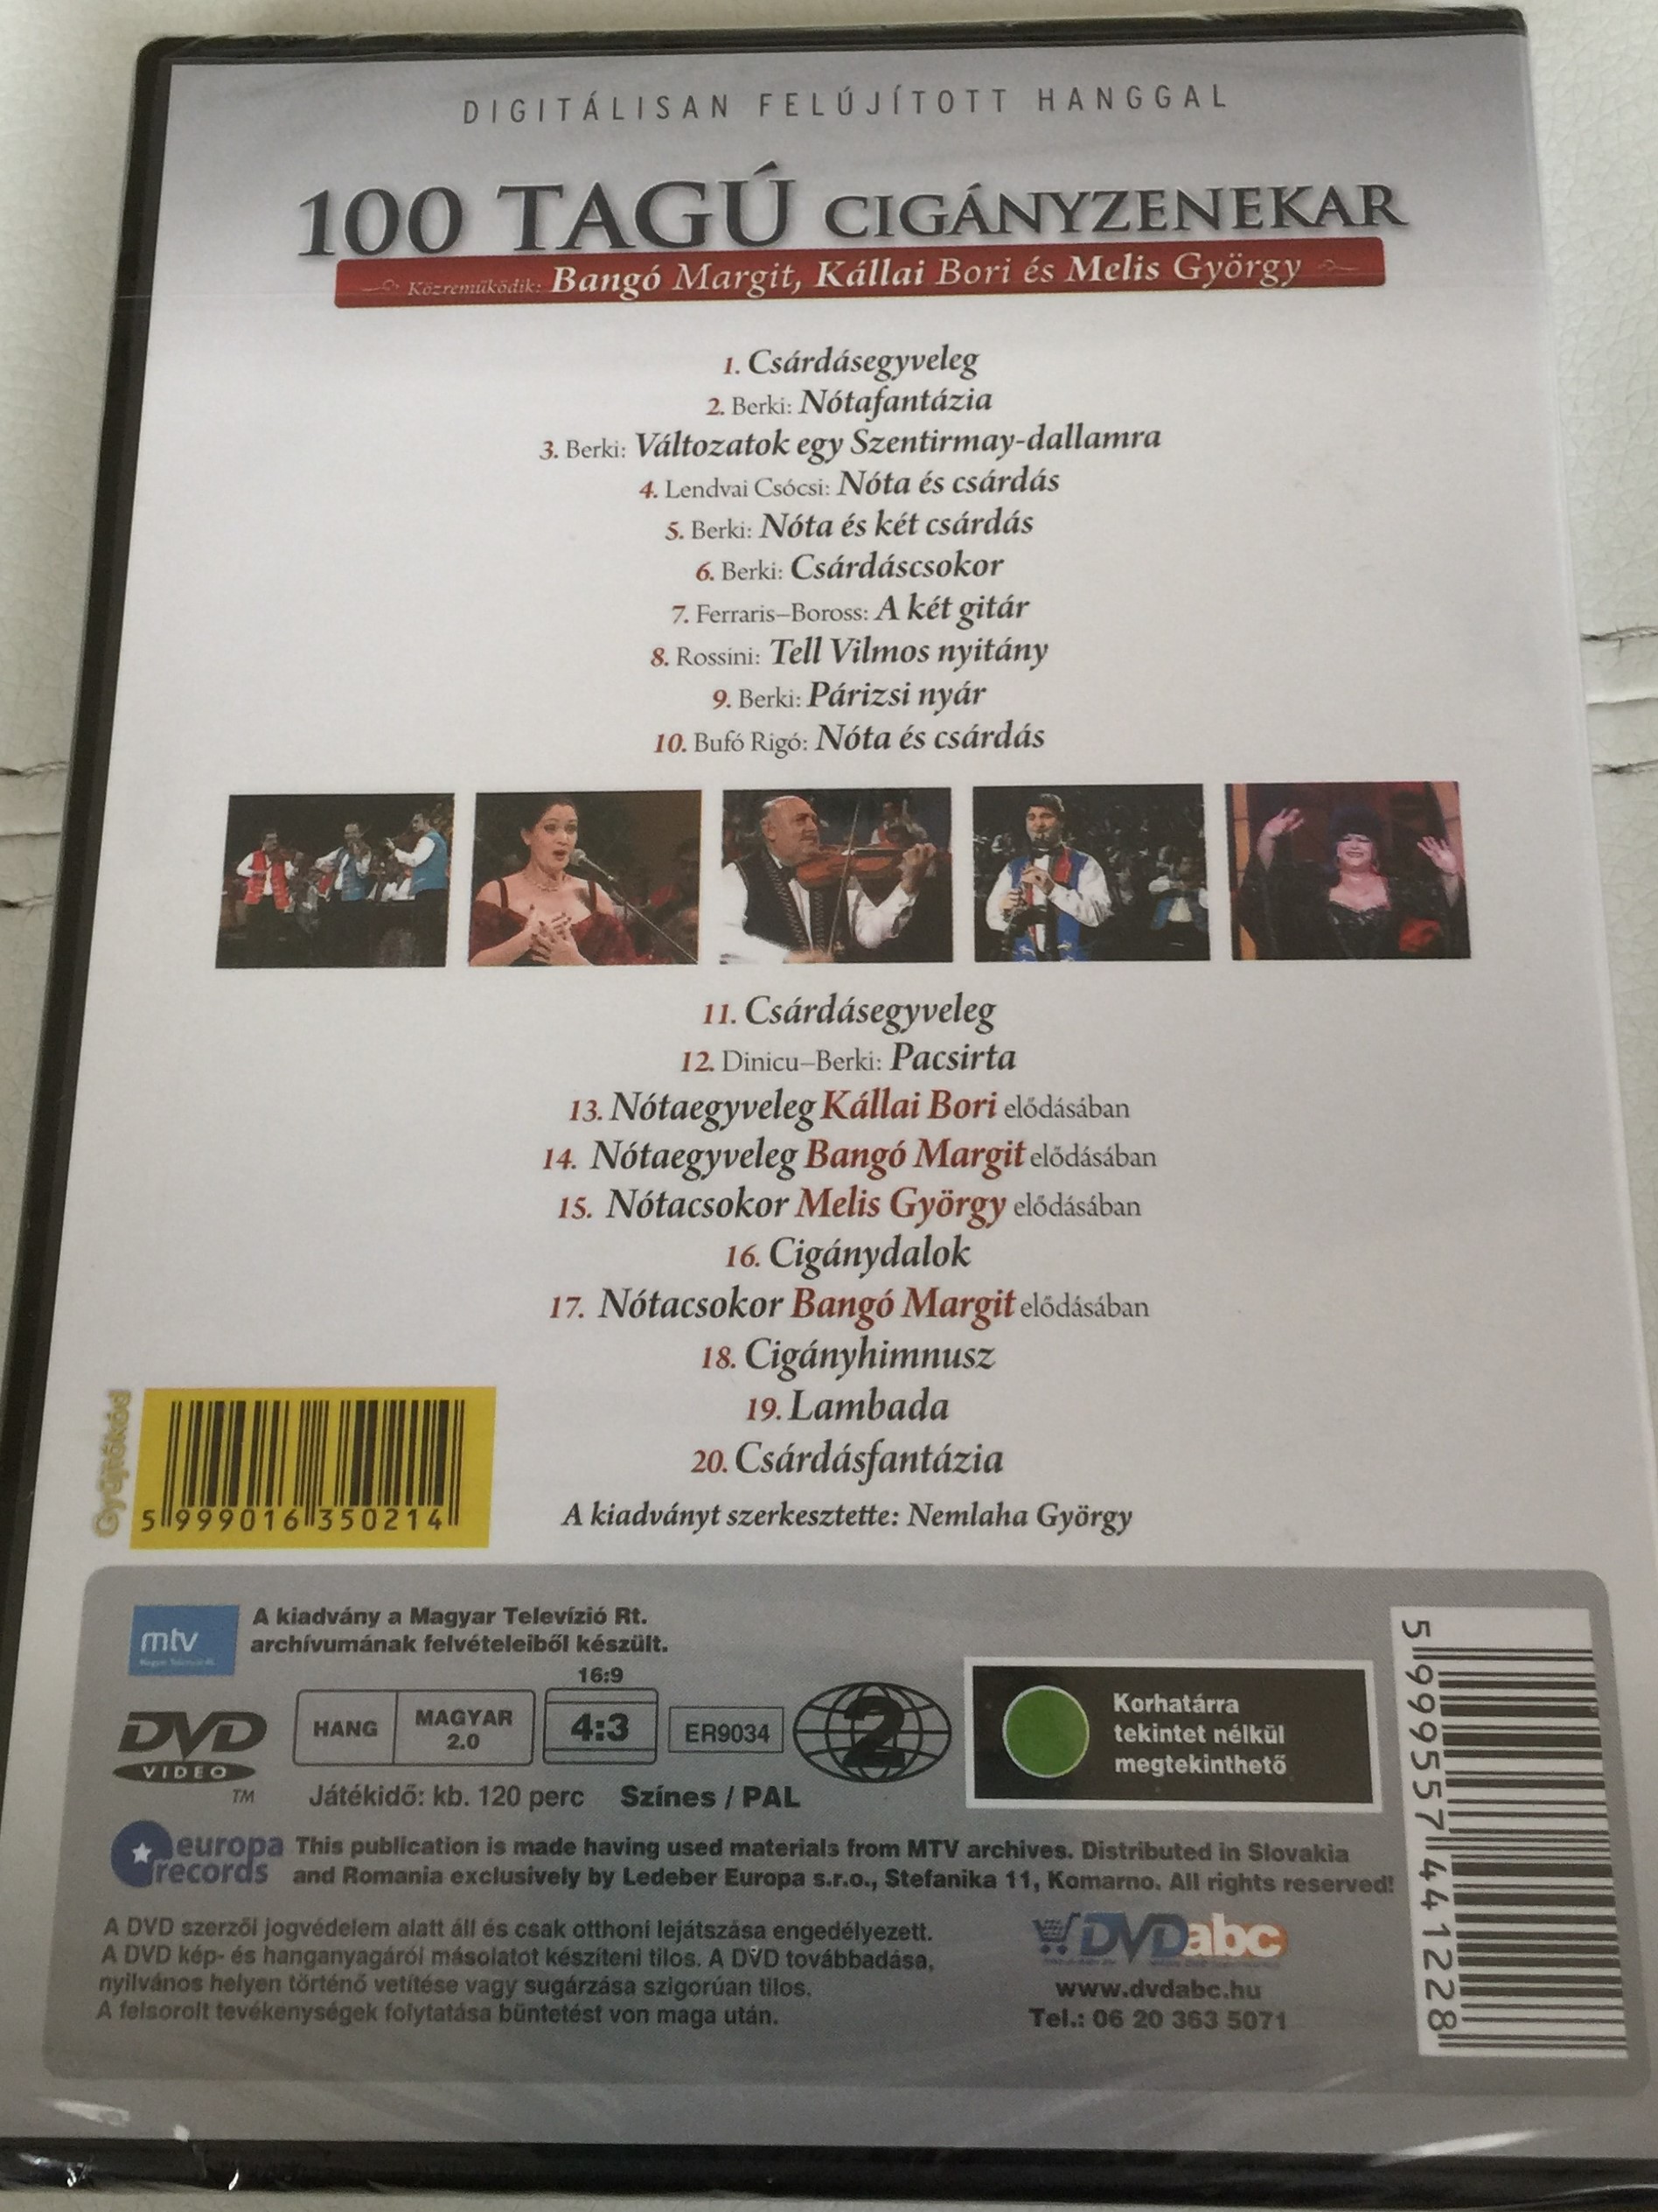 100-tag-cig-nyzenekar-dvd-budapest-gypsy-orchestra-2.jpg